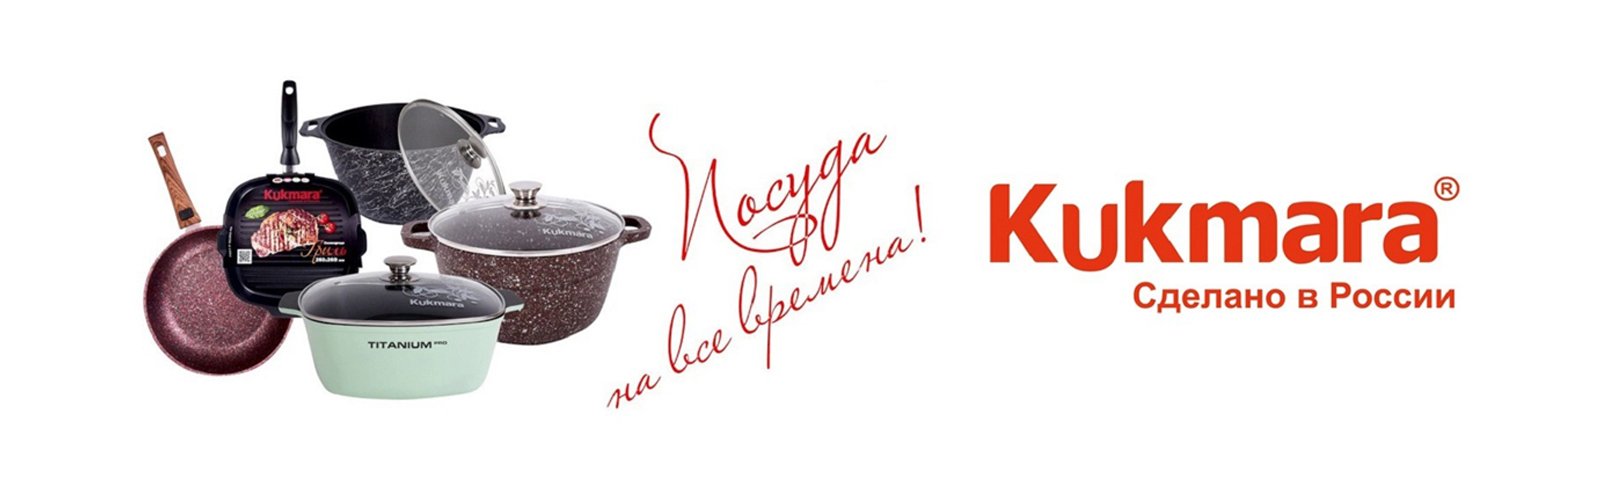 Livingshop ru. Кукморский завод Металлопосуды логотип. Kukmara набор посуды. Кукмара посуда логотип. Посуда баннер Кукмара.